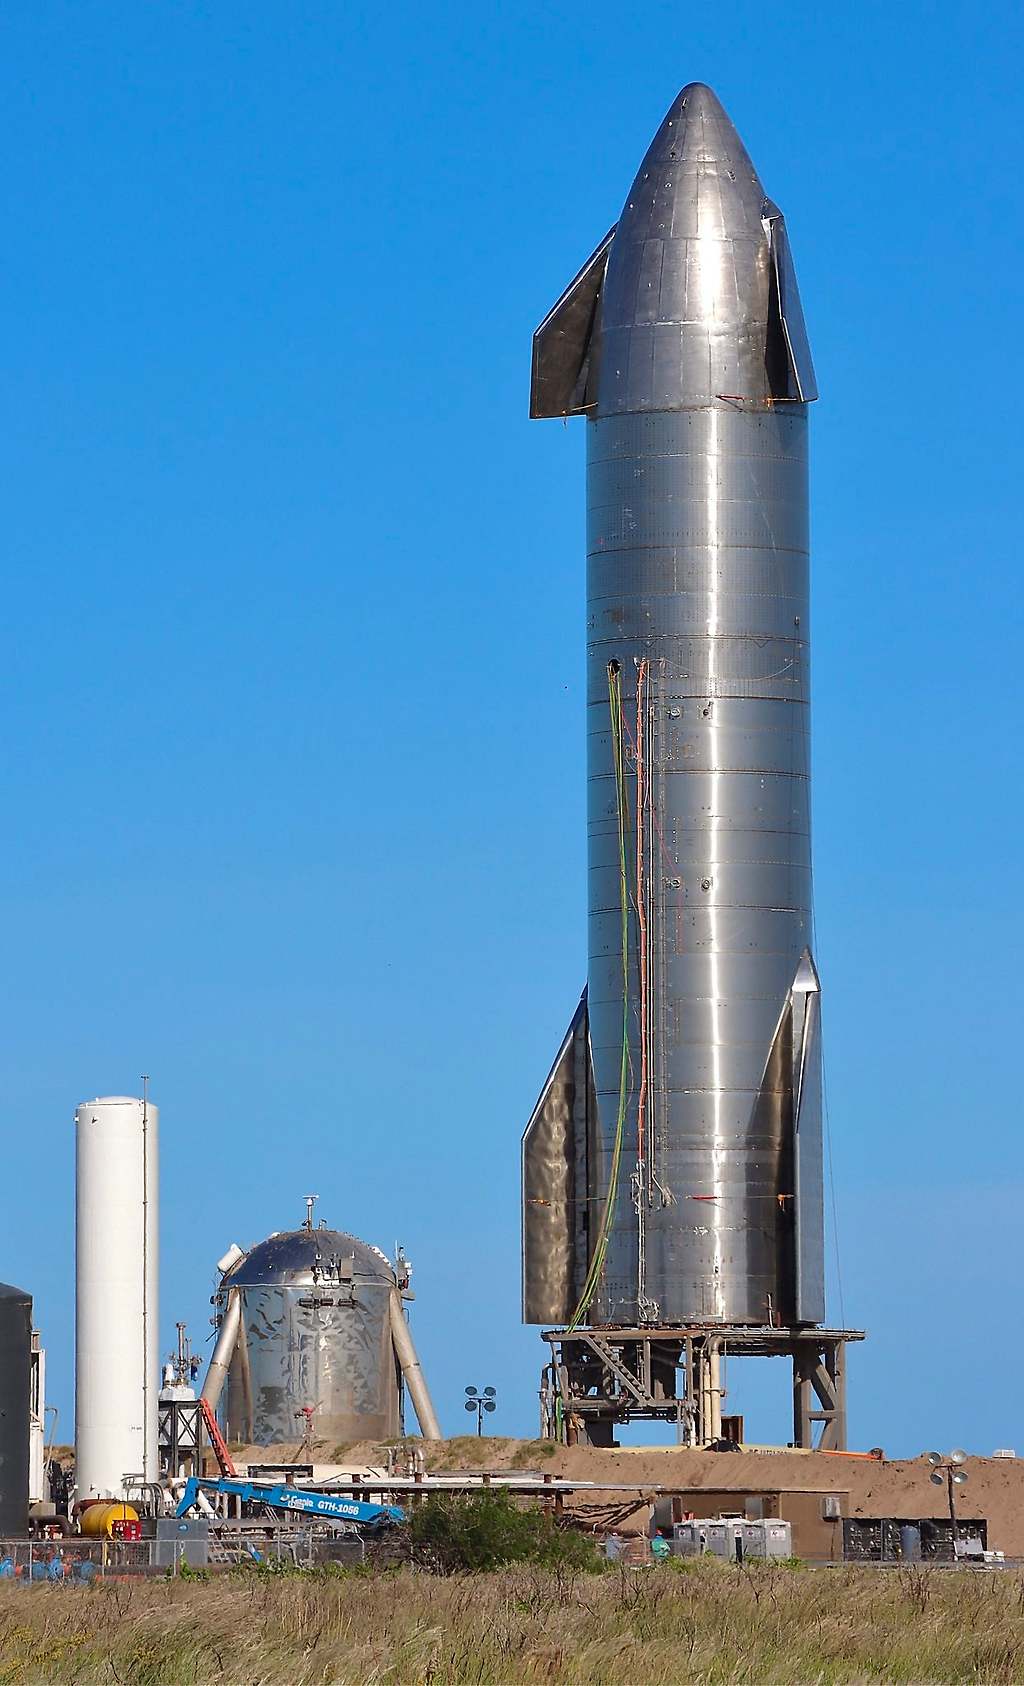 La nave Starship prototipo SN8 de SpaceX, en preparación para su prueba de vuelo.